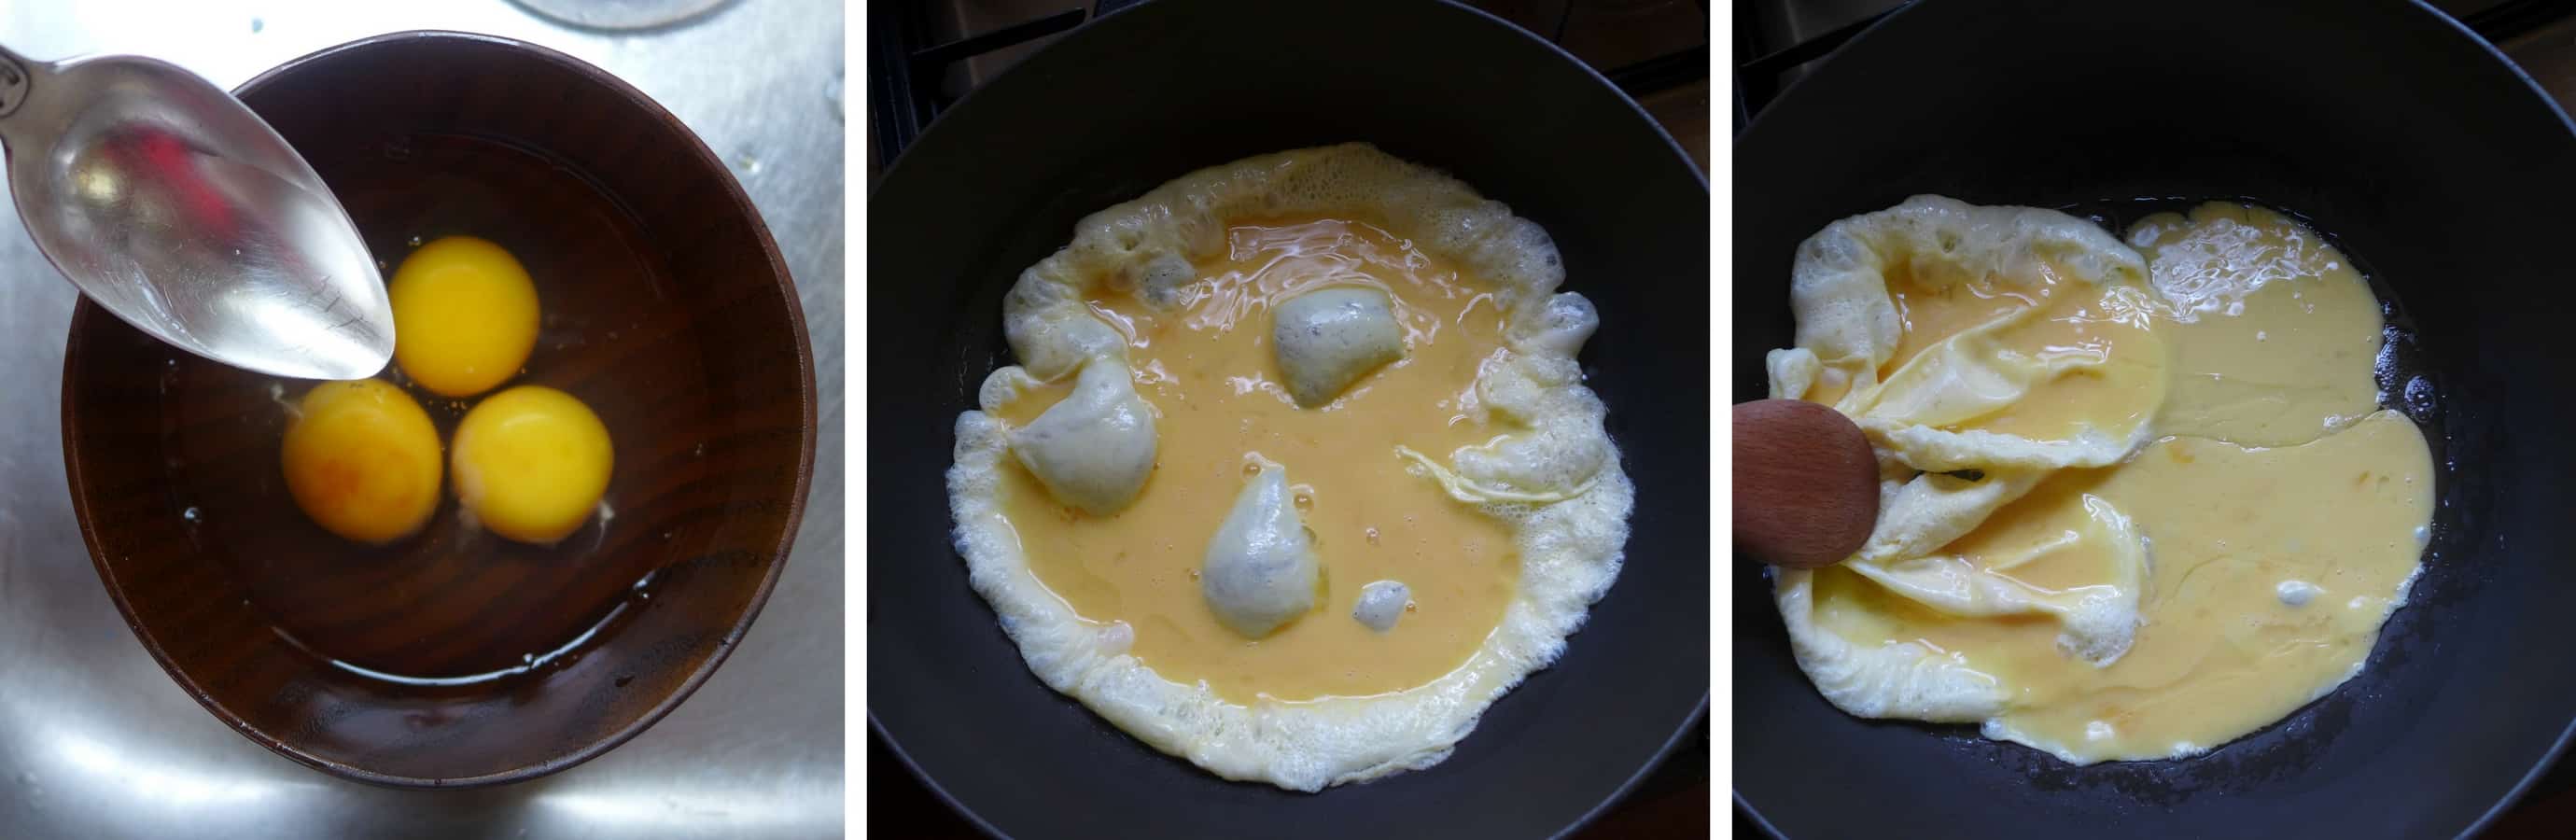 Beaten eggs in a wok